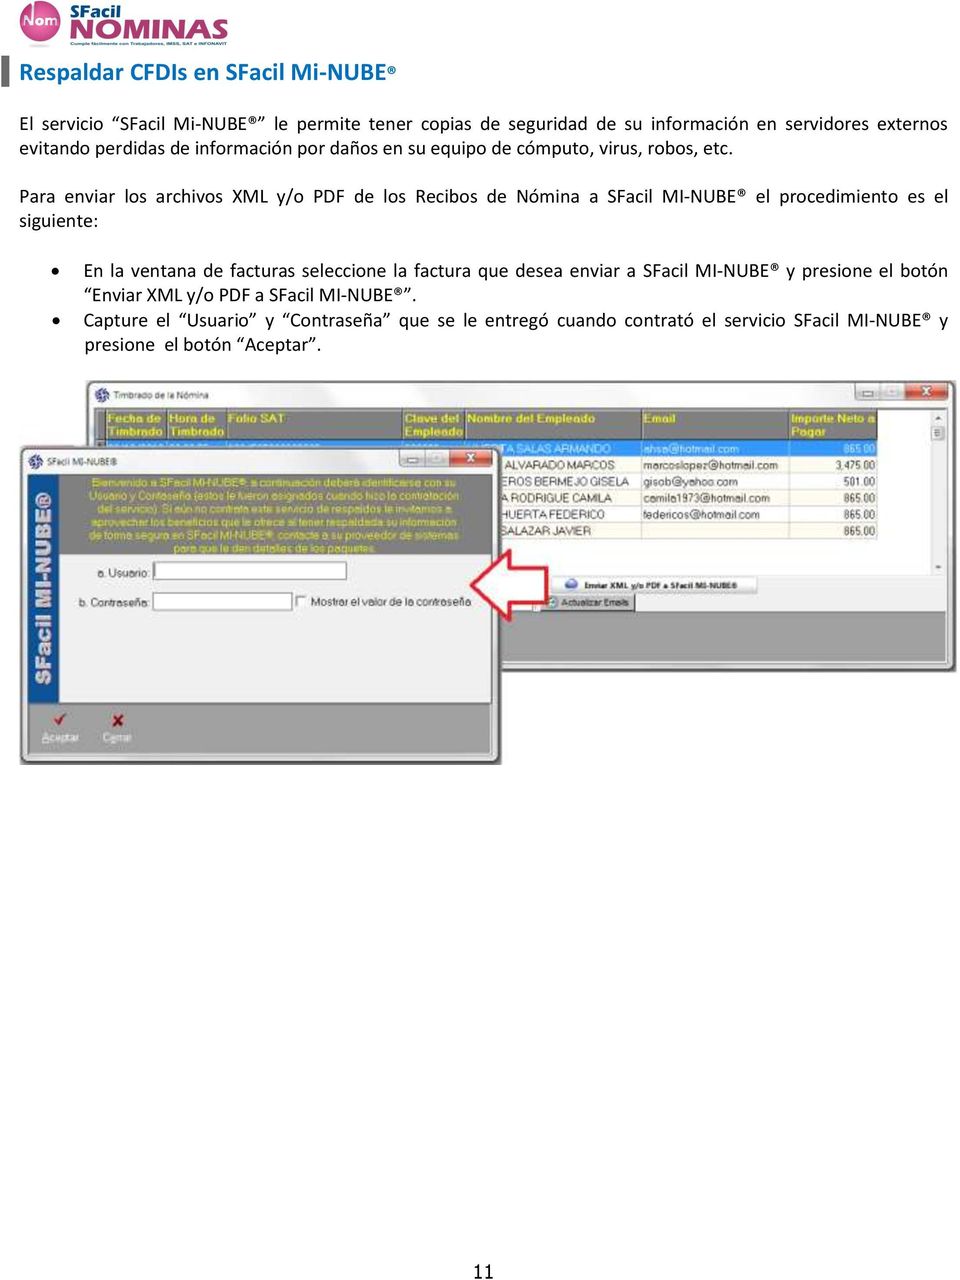 Para enviar los archivos XML y/o PDF de los Recibos de Nómina a SFacil MI-NUBE el procedimiento es el siguiente: En la ventana de facturas seleccione